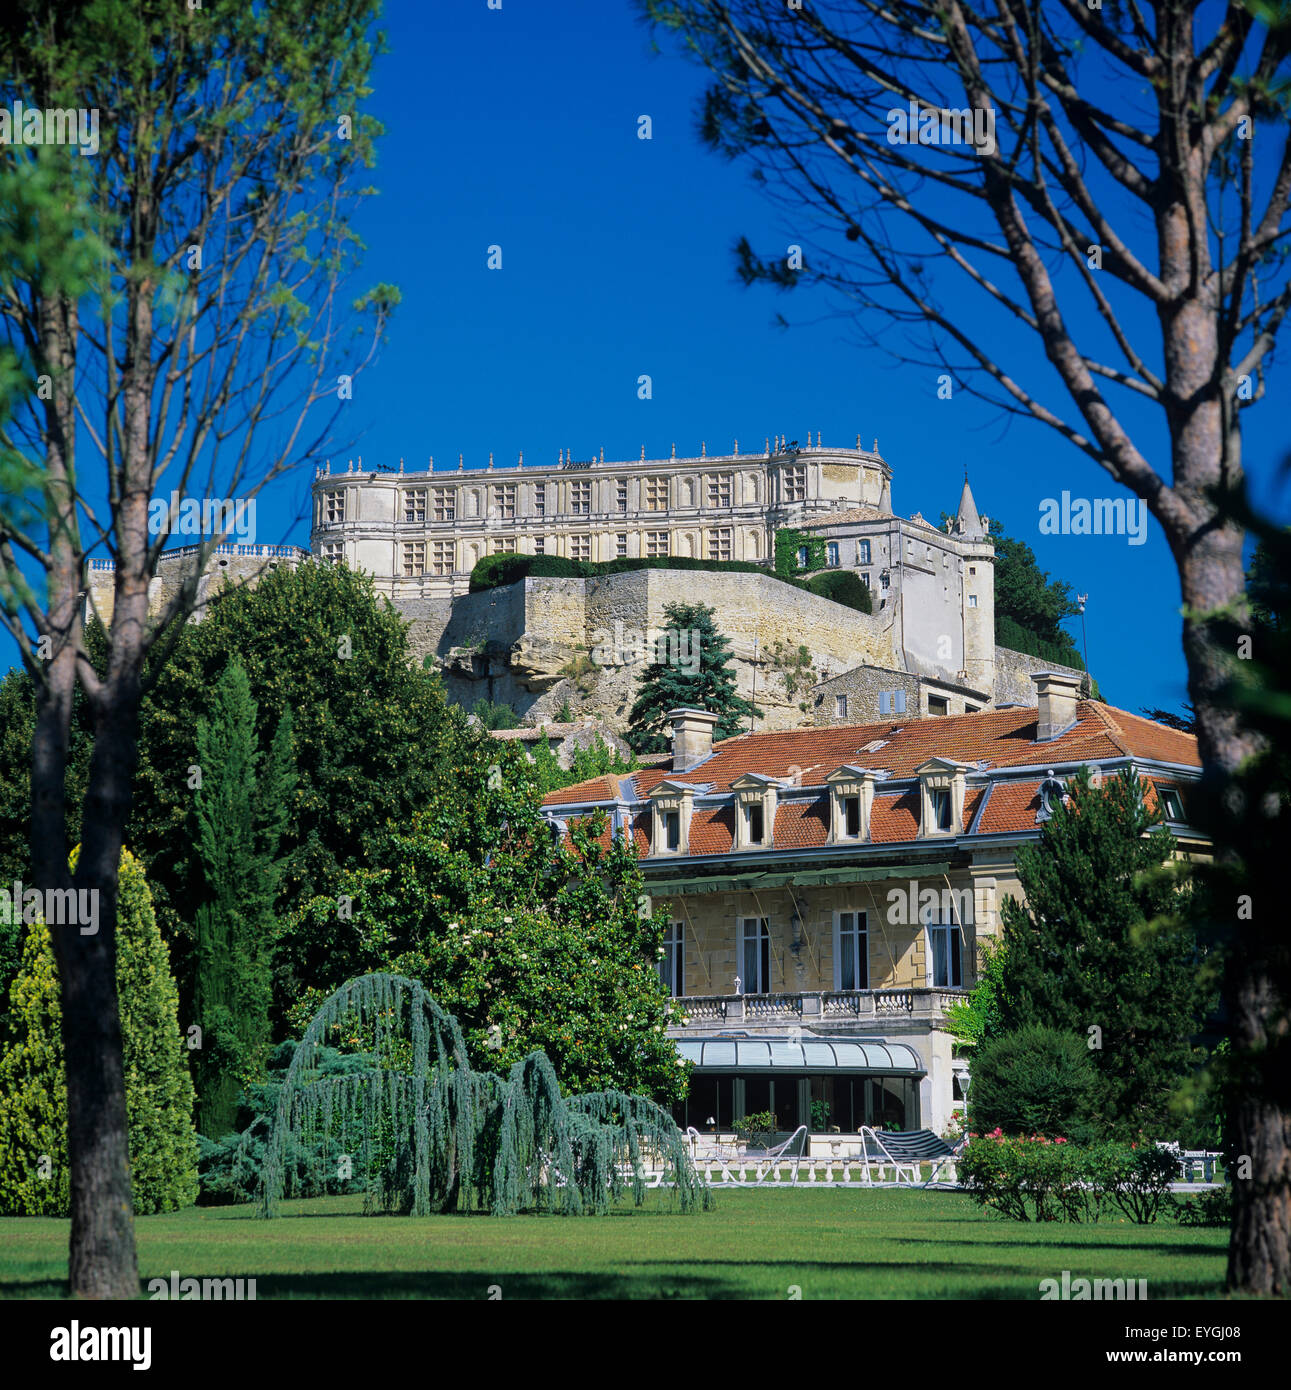 L'hôtel 'Le Manoir de la Roseraie' et château, Grignan, Drôme, Provence, France, Europe Banque D'Images